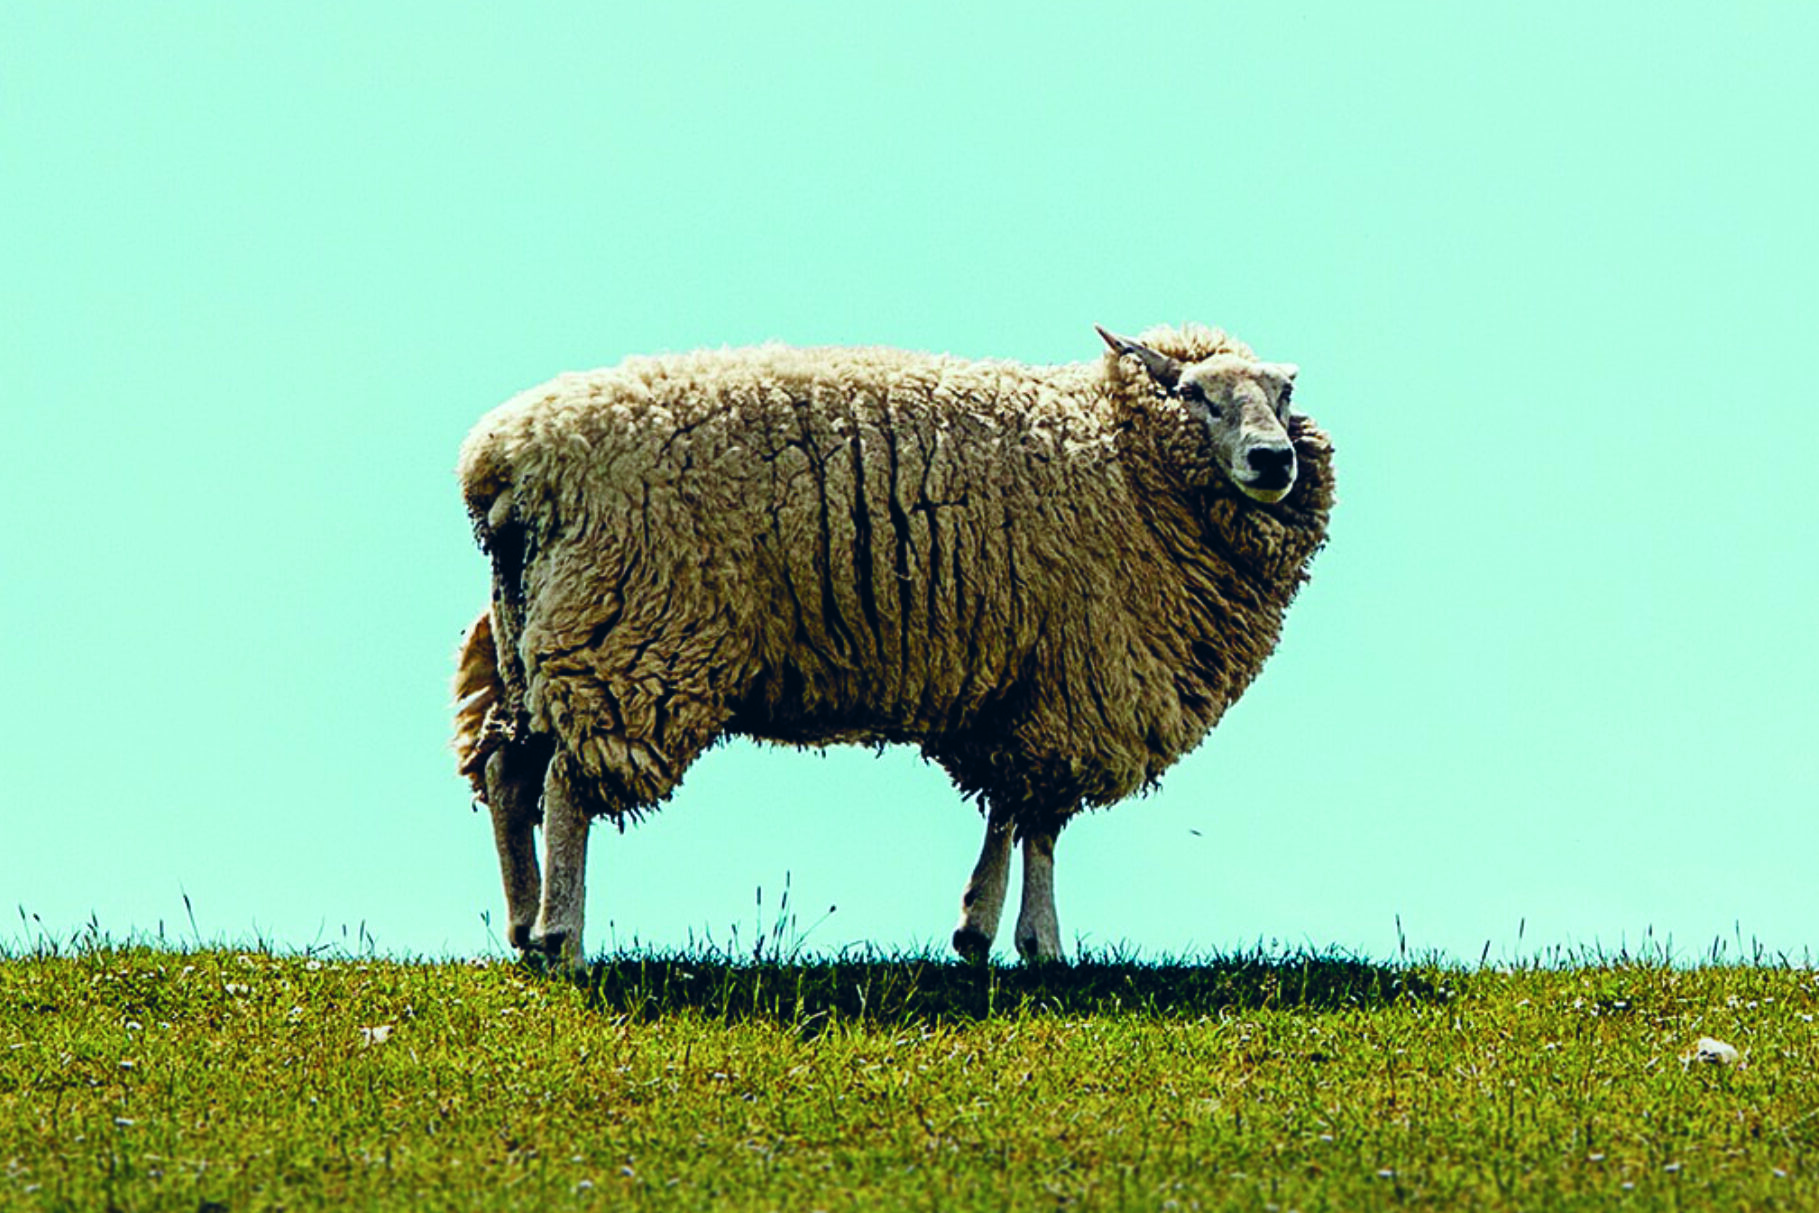 Wolliges Schaf auf einer Wiese bei blauem Himmel